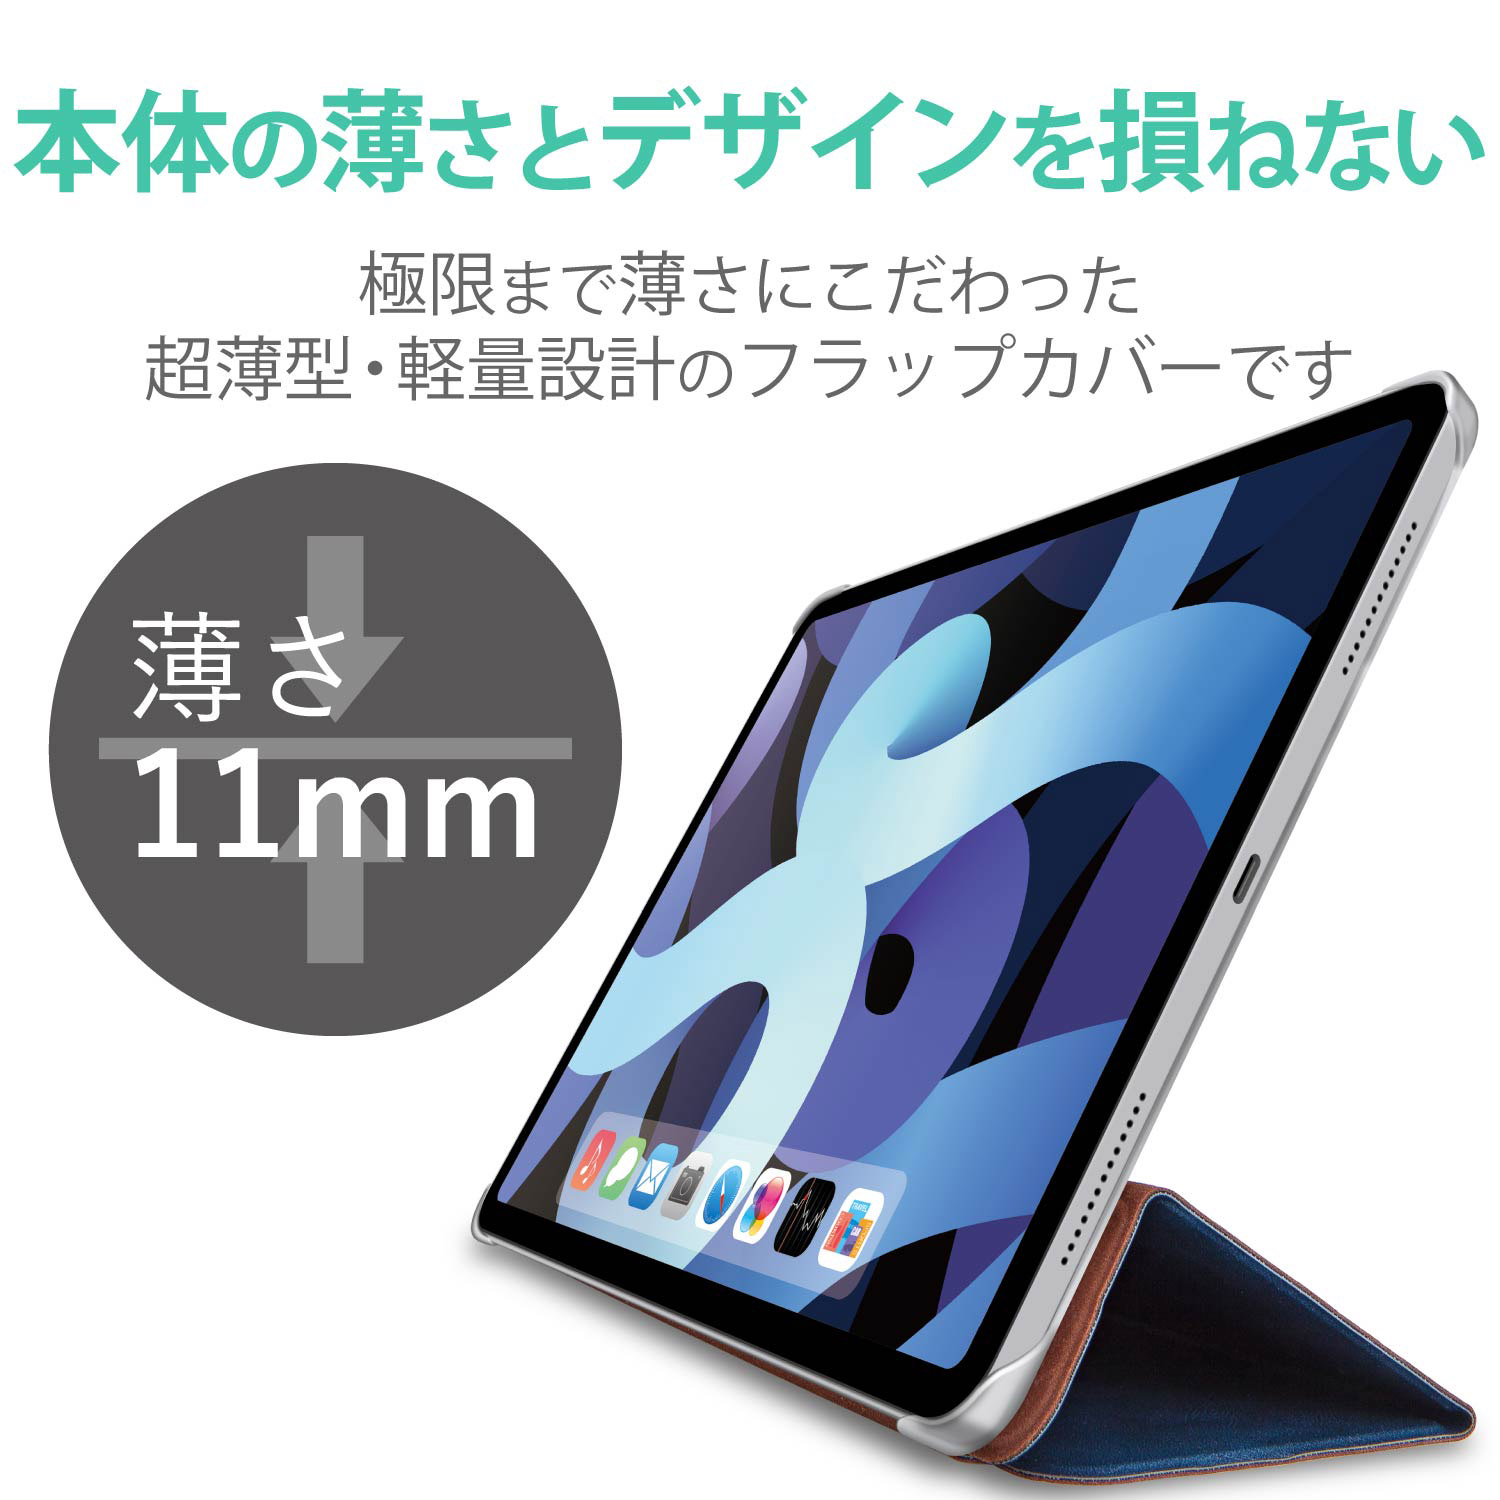 ♥20OFF♥ iPad Air 2 ケース 超薄型 超軽量 - iPadアクセサリー